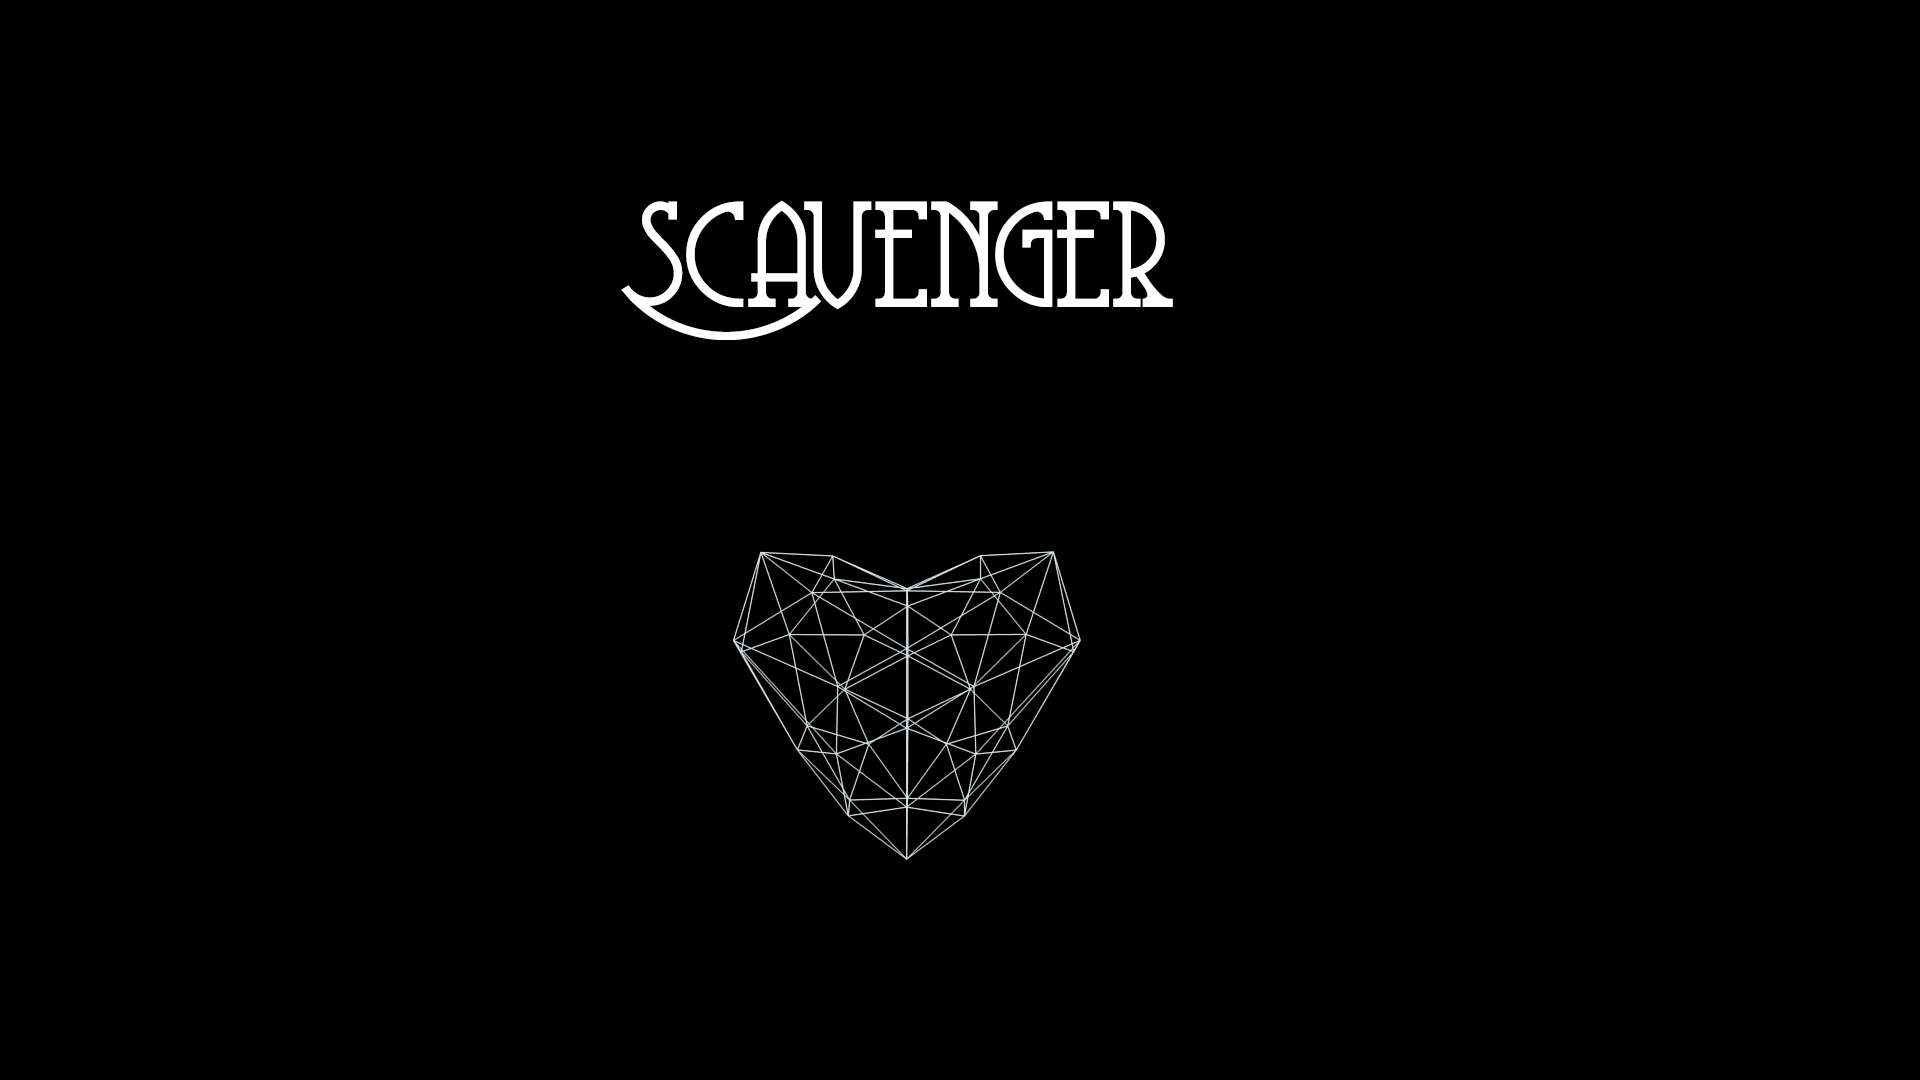 Scavenger